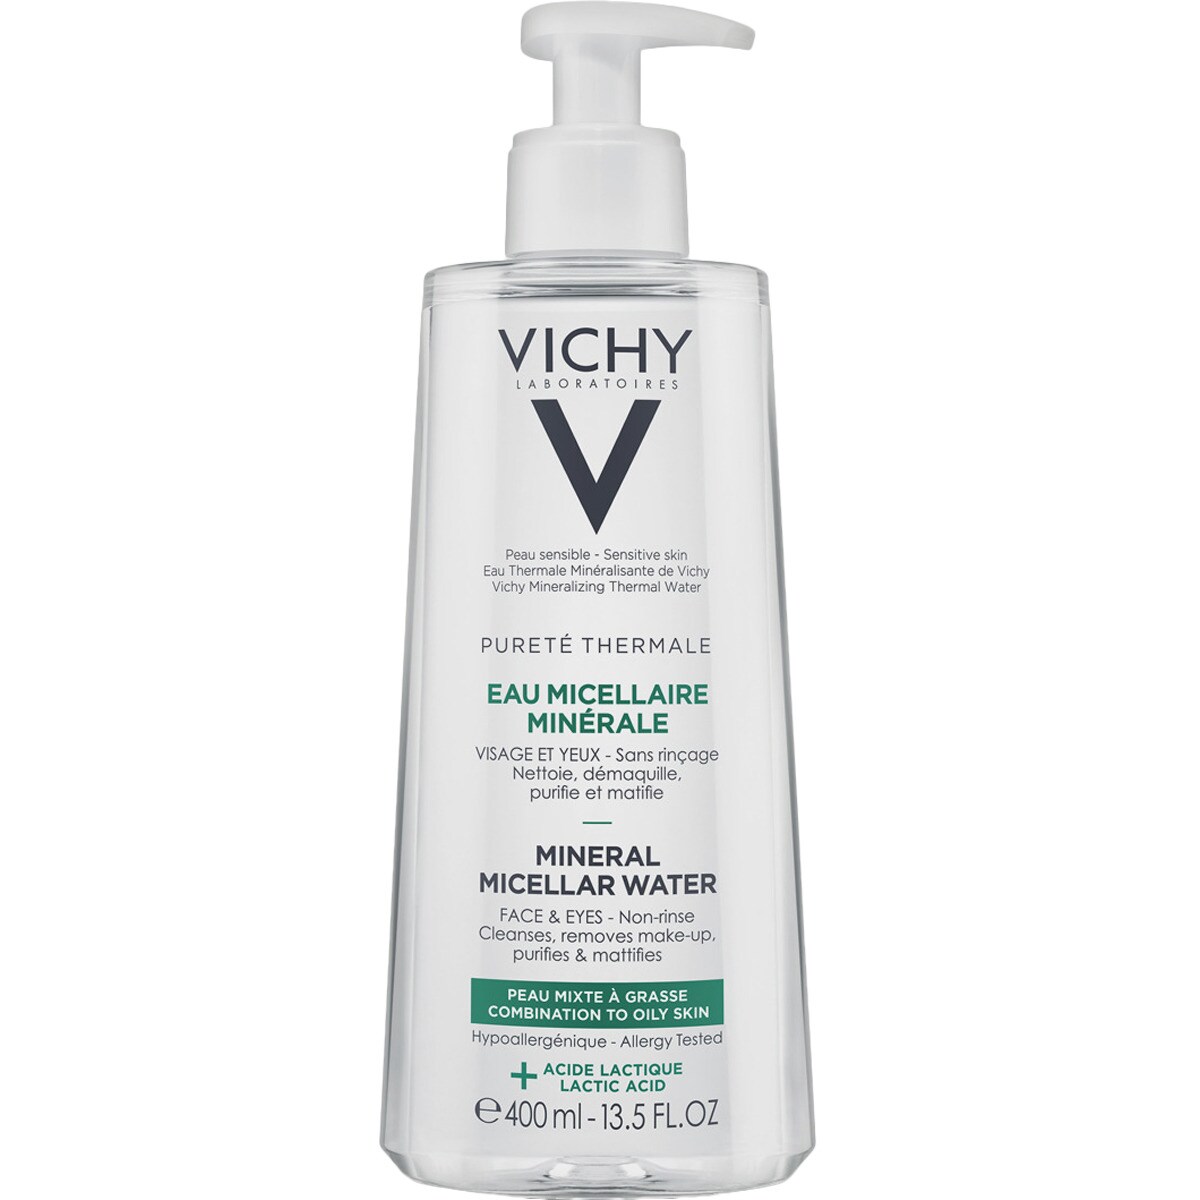 VICHY PURETE THERMALE Solución Micelar para piel grasa 400 ml. Es un desmaquillante que captura las impurezas dejando la piel limpia y sin rastro de maquillaje. Gracias a la Tecnología Micelar